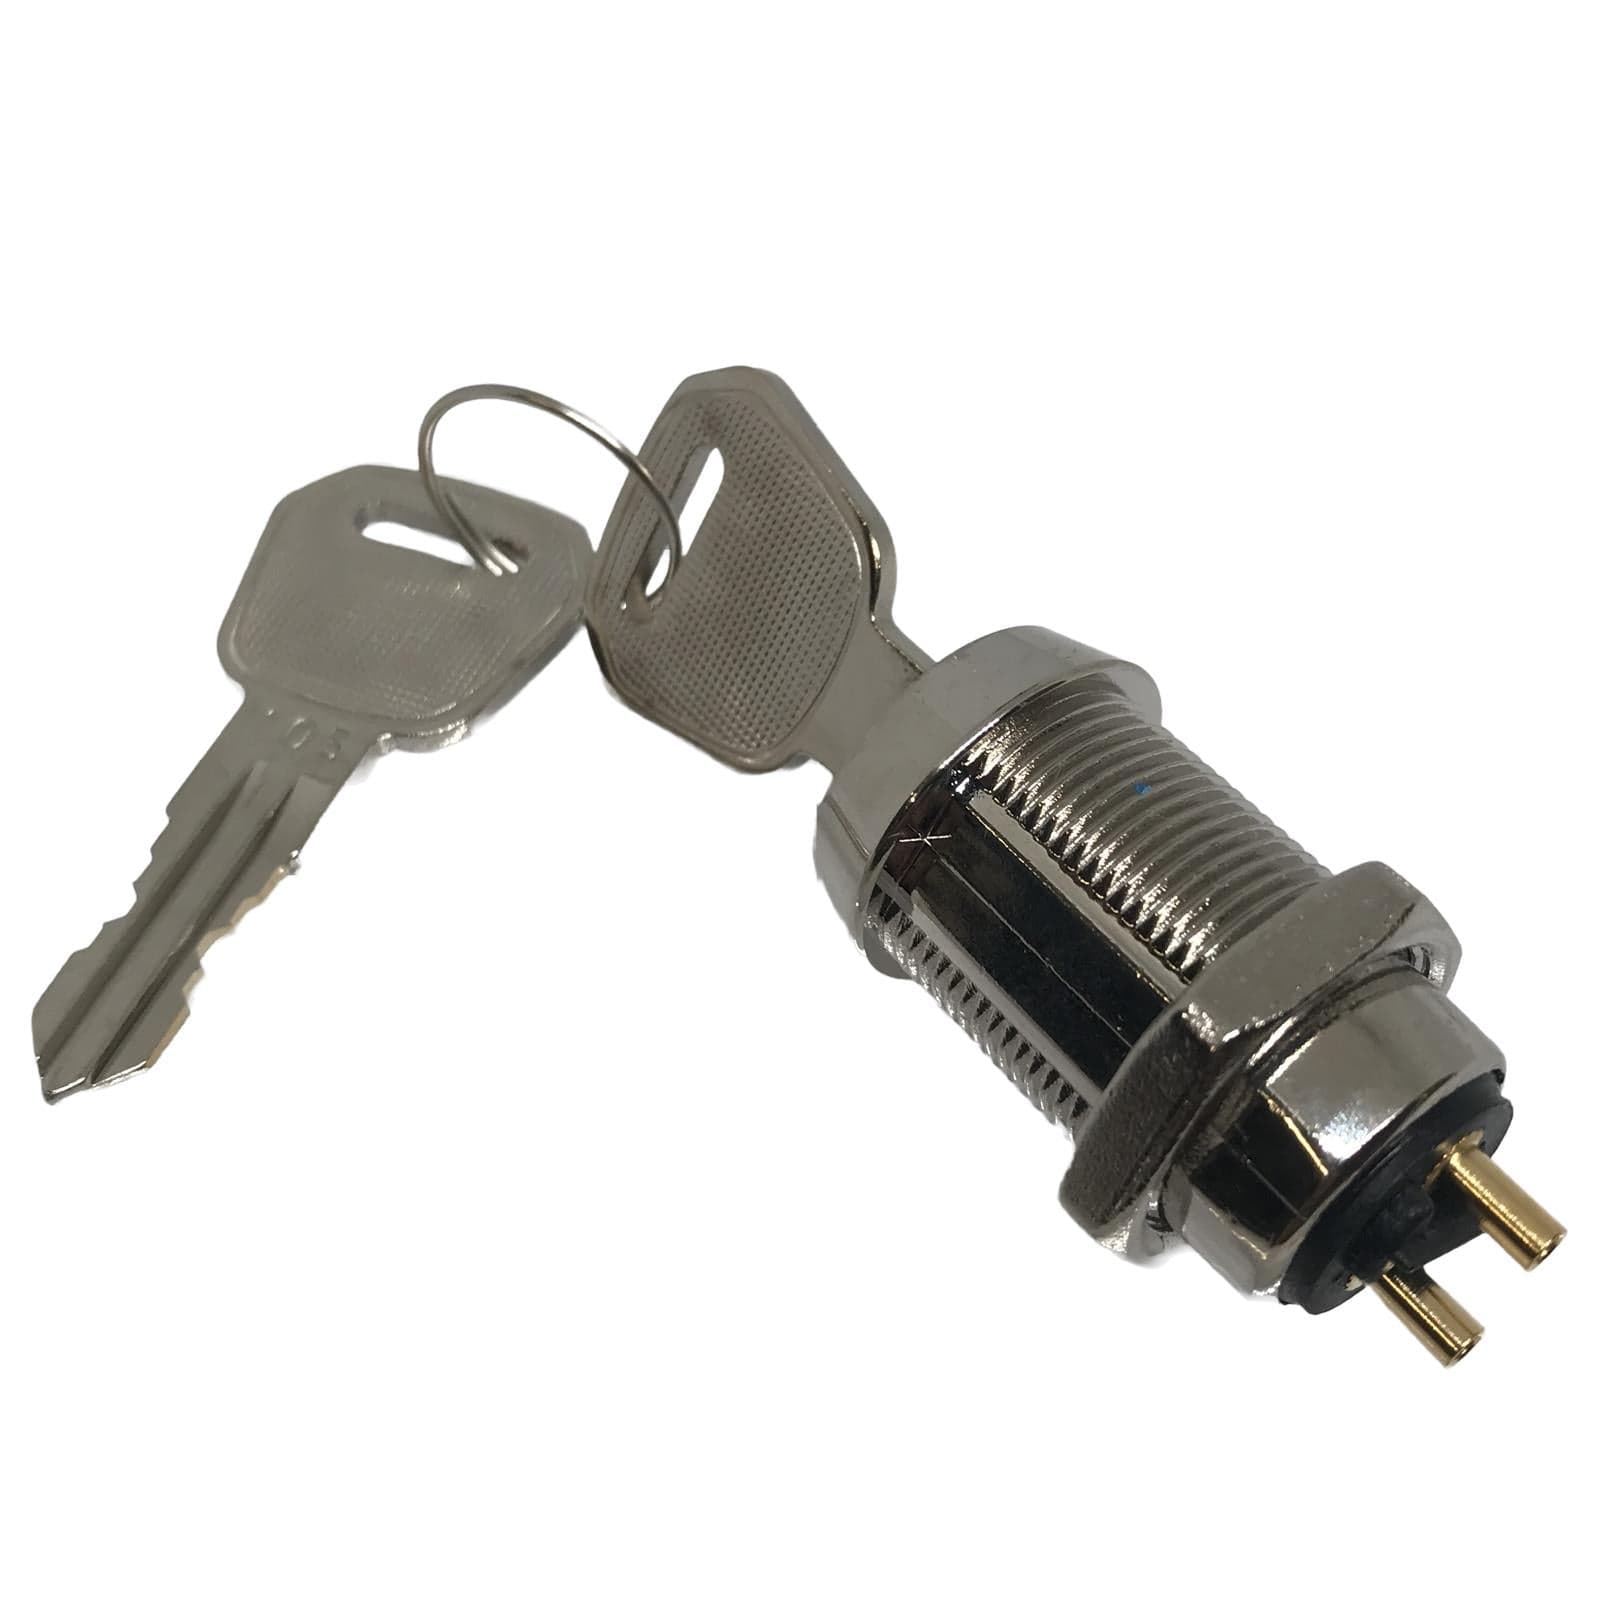 Metal Body Key Switch (On/Off) SPST 4A 125V 2A 250V Service Item Thunderfix 902900